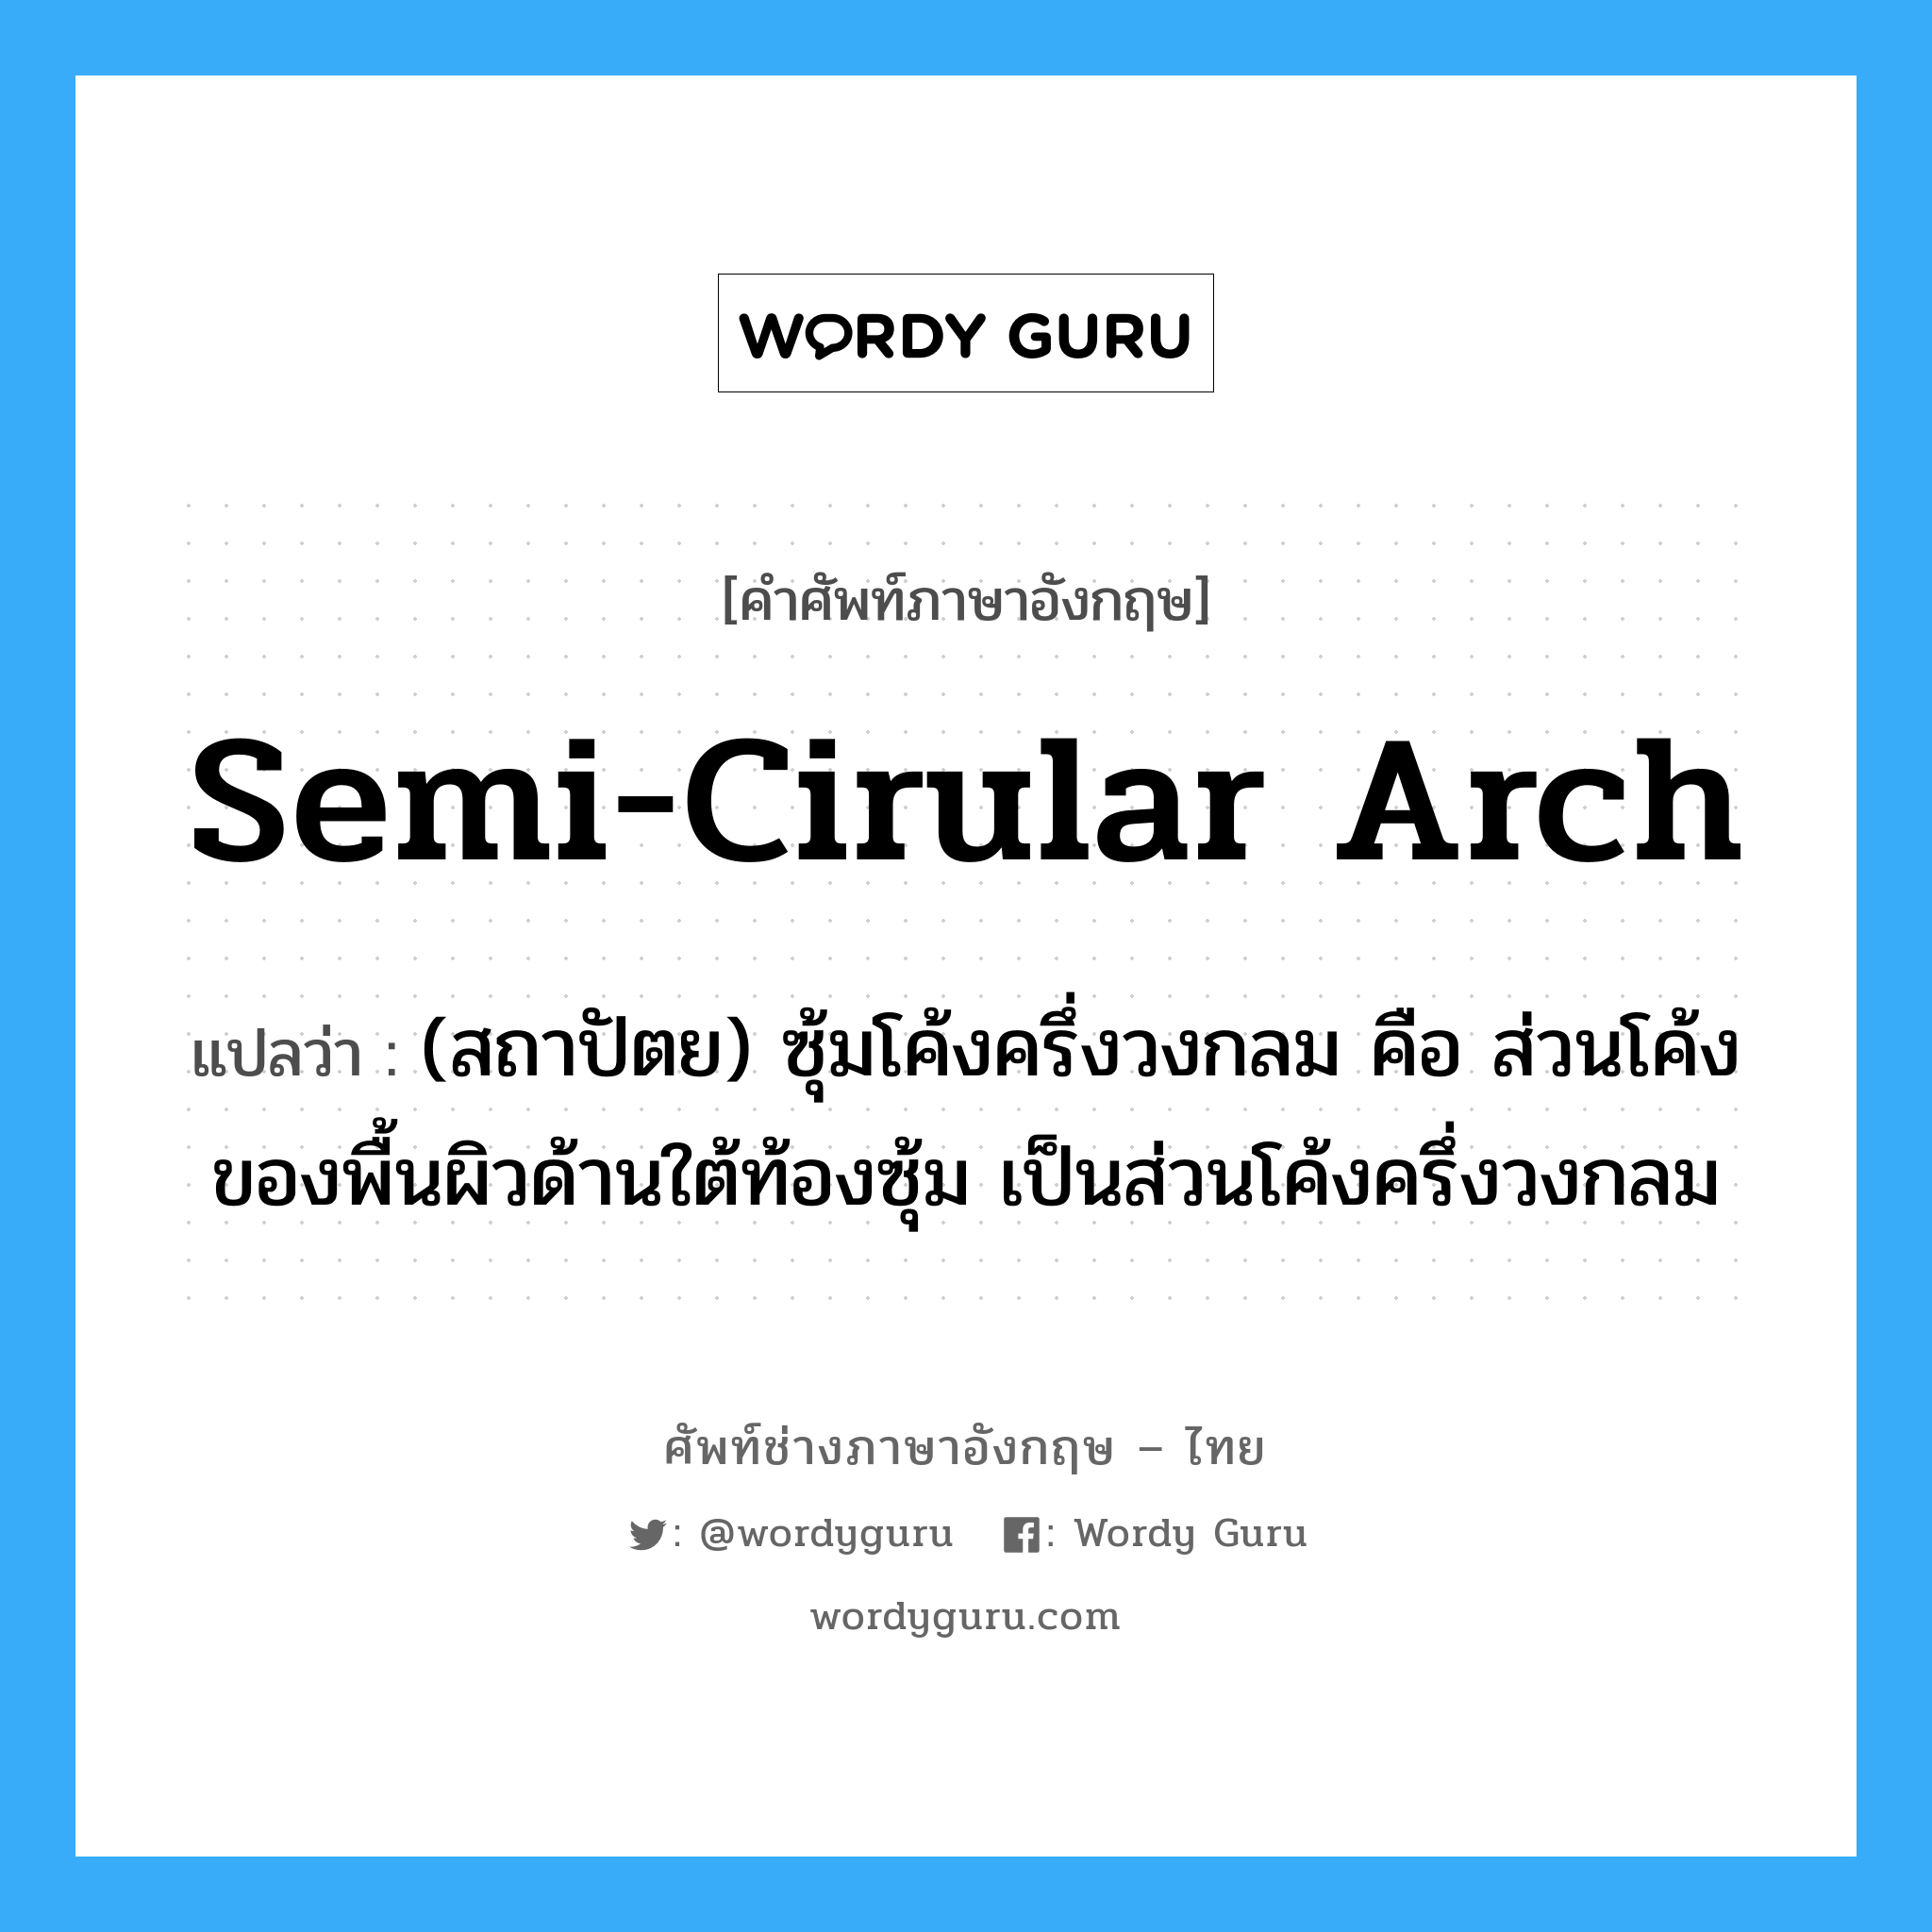 semi-cirular arch แปลว่า?, คำศัพท์ช่างภาษาอังกฤษ - ไทย semi-cirular arch คำศัพท์ภาษาอังกฤษ semi-cirular arch แปลว่า (สถาปัตย) ซุ้มโค้งครึ่งวงกลม คือ ส่วนโค้งของพื้นผิวด้านใต้ท้องซุ้ม เป็นส่วนโค้งครึ่งวงกลม